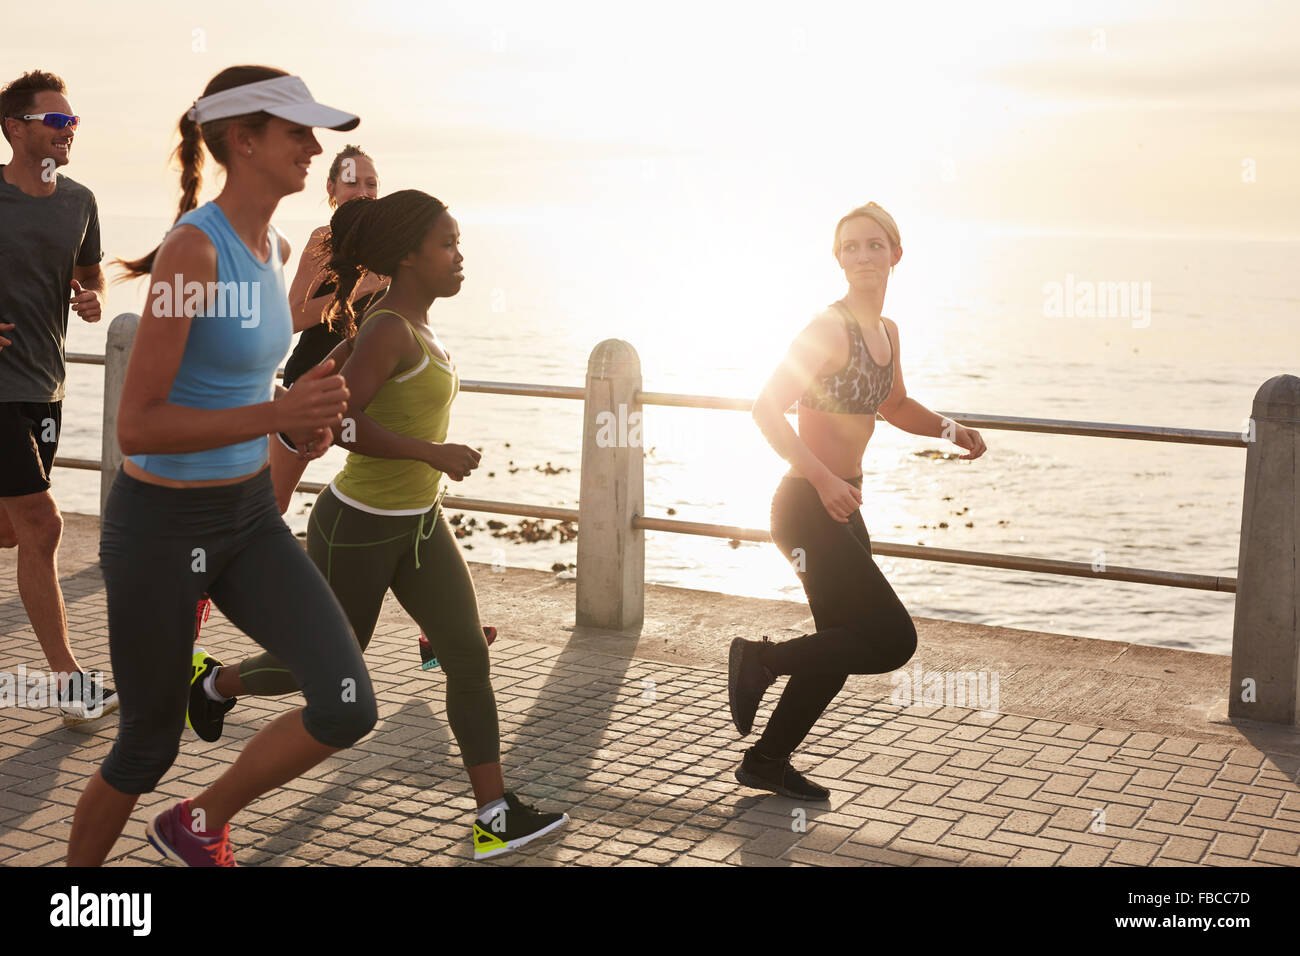 Junge Menschen, die entlang am Meer bei Sonnenuntergang. Nahaufnahme Bild der Gruppe von Läufern, die Arbeiten auf einer Straße am Meer. Stockfoto